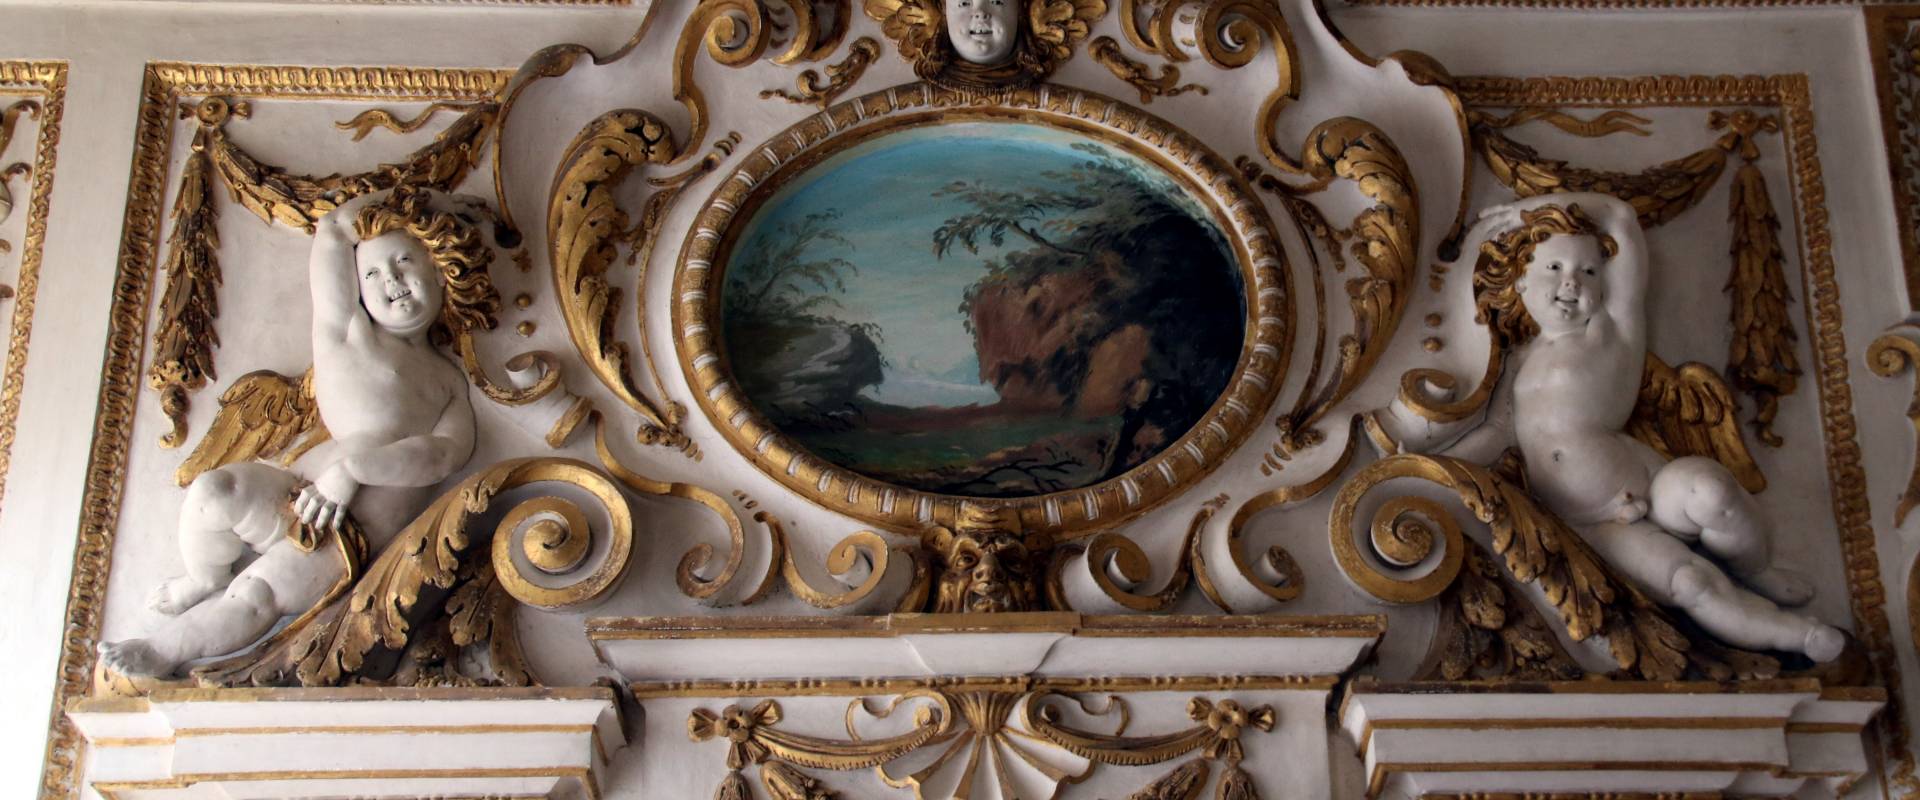 Palazzo Ducale (Sassuolo), Camera della Pittura 03 photo by Mongolo1984